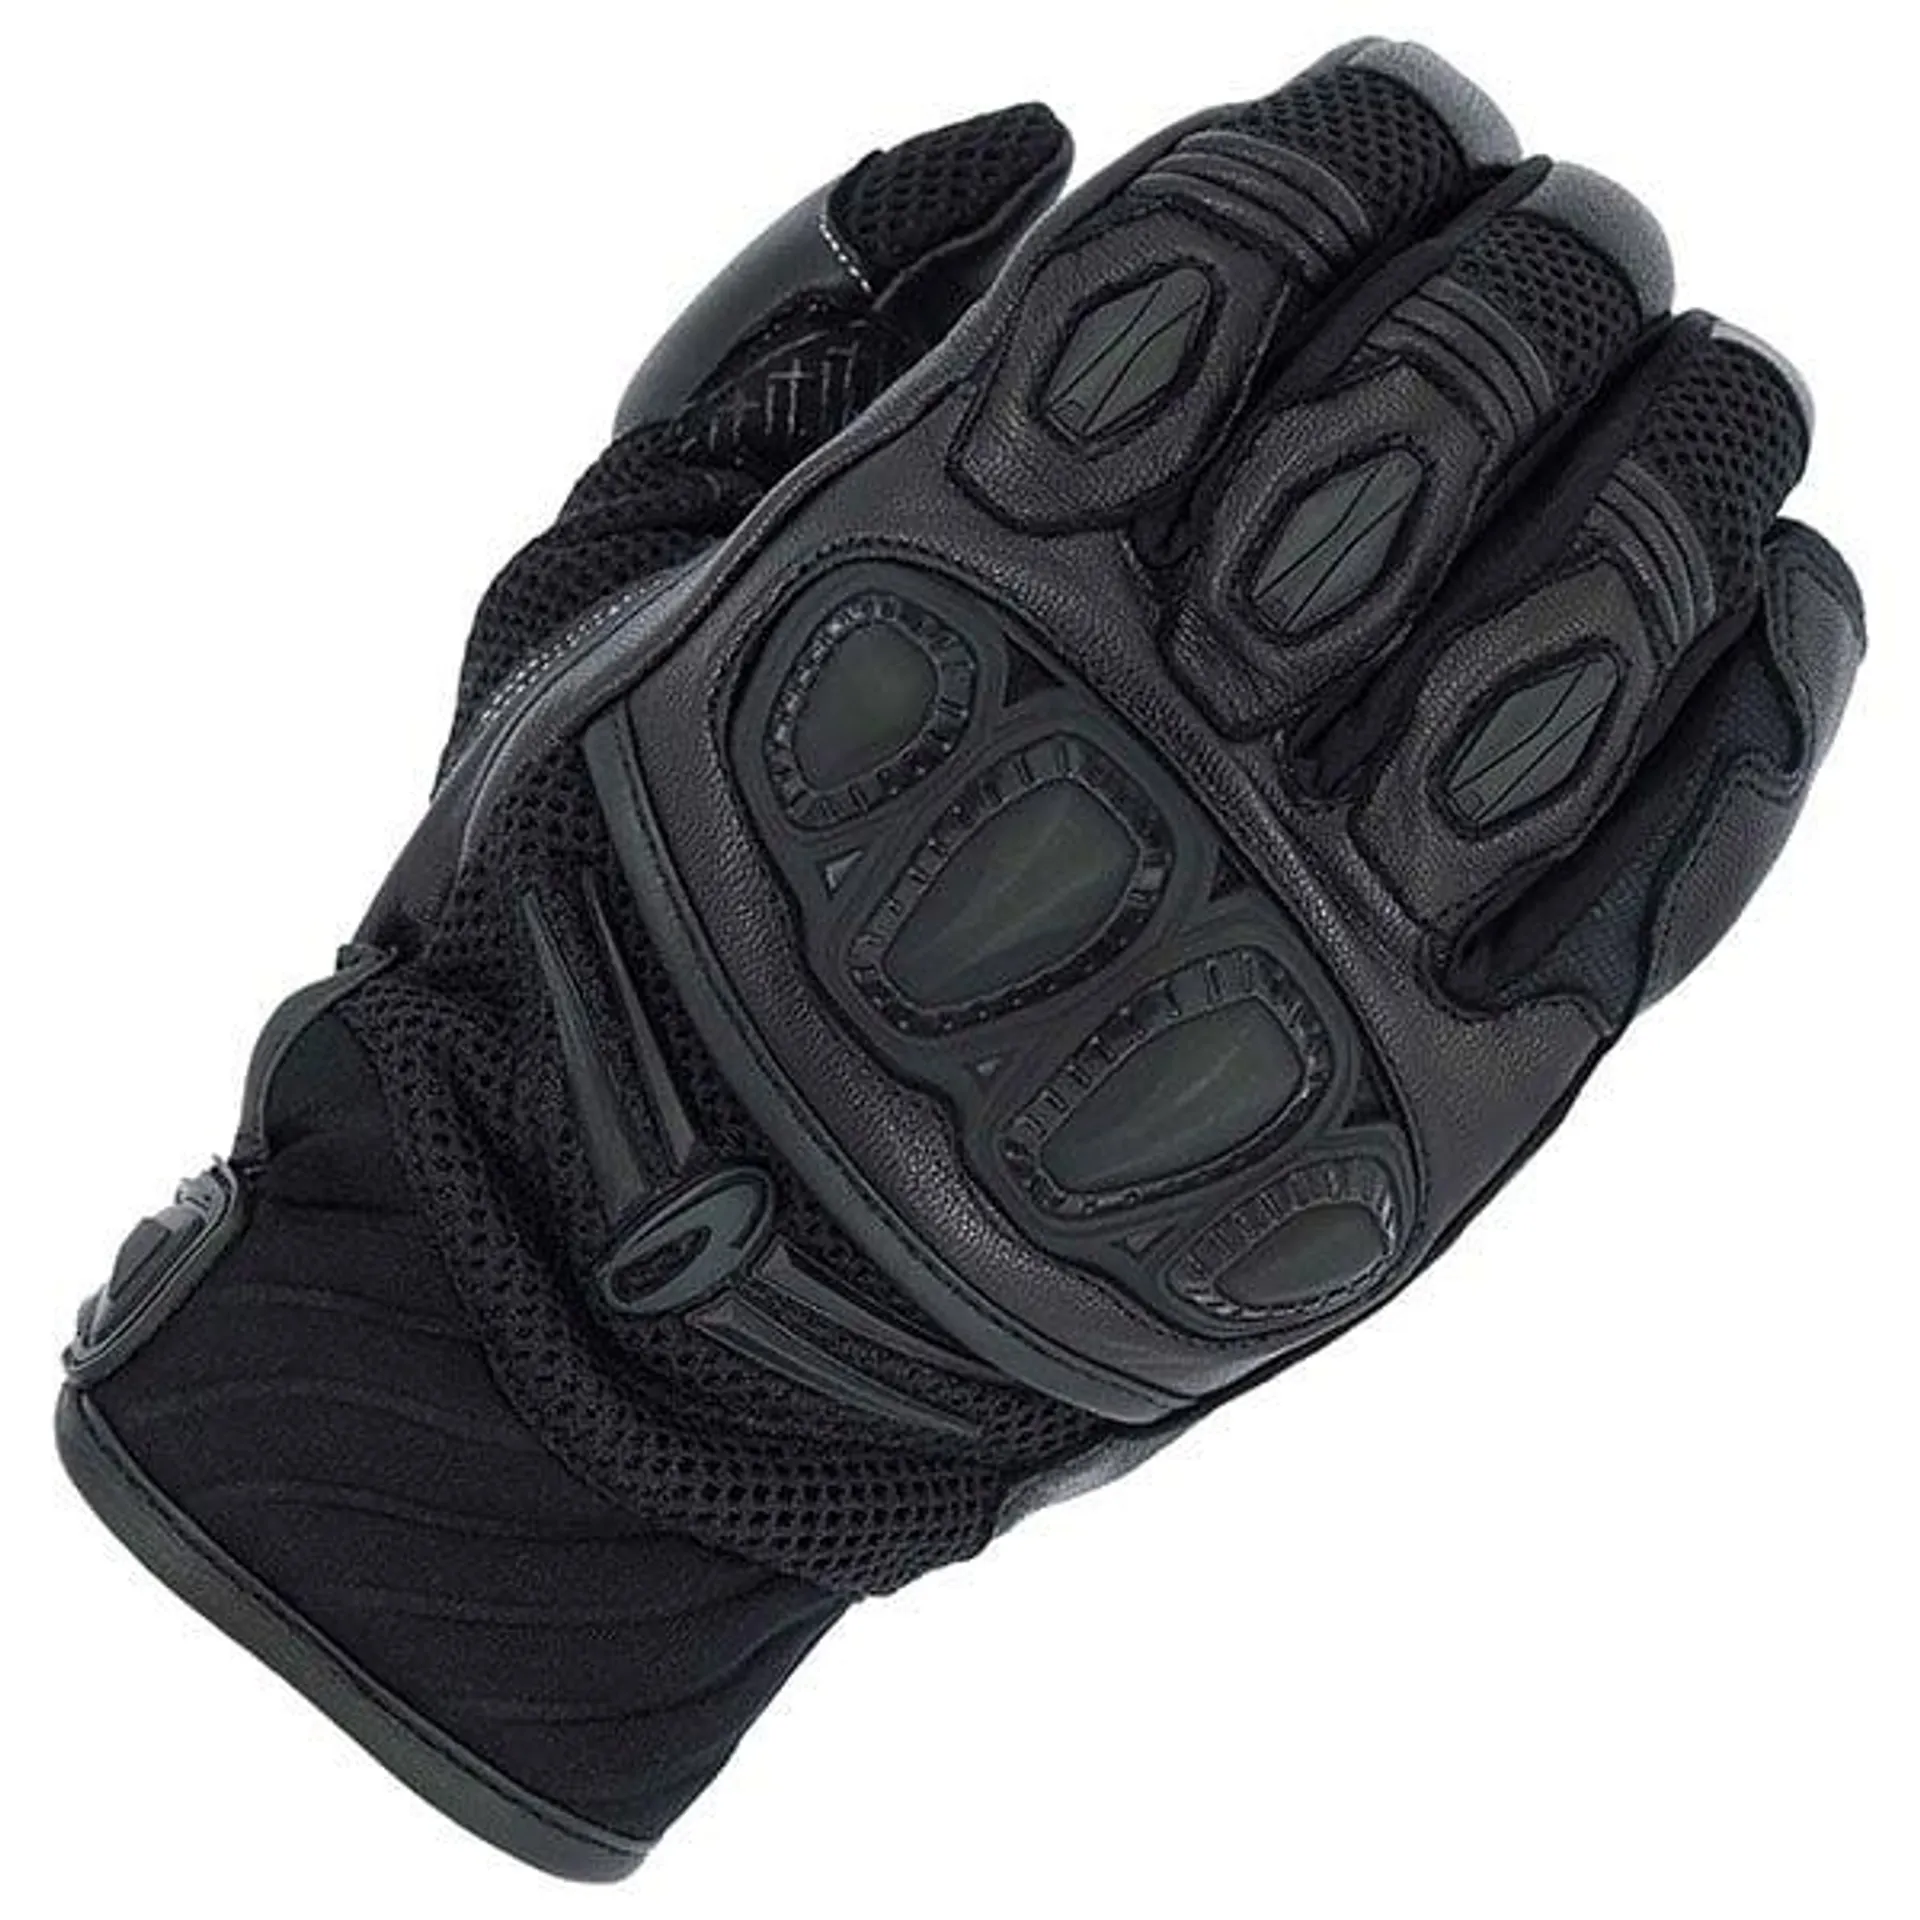 Richa Turbo Mixed Gloves - Black